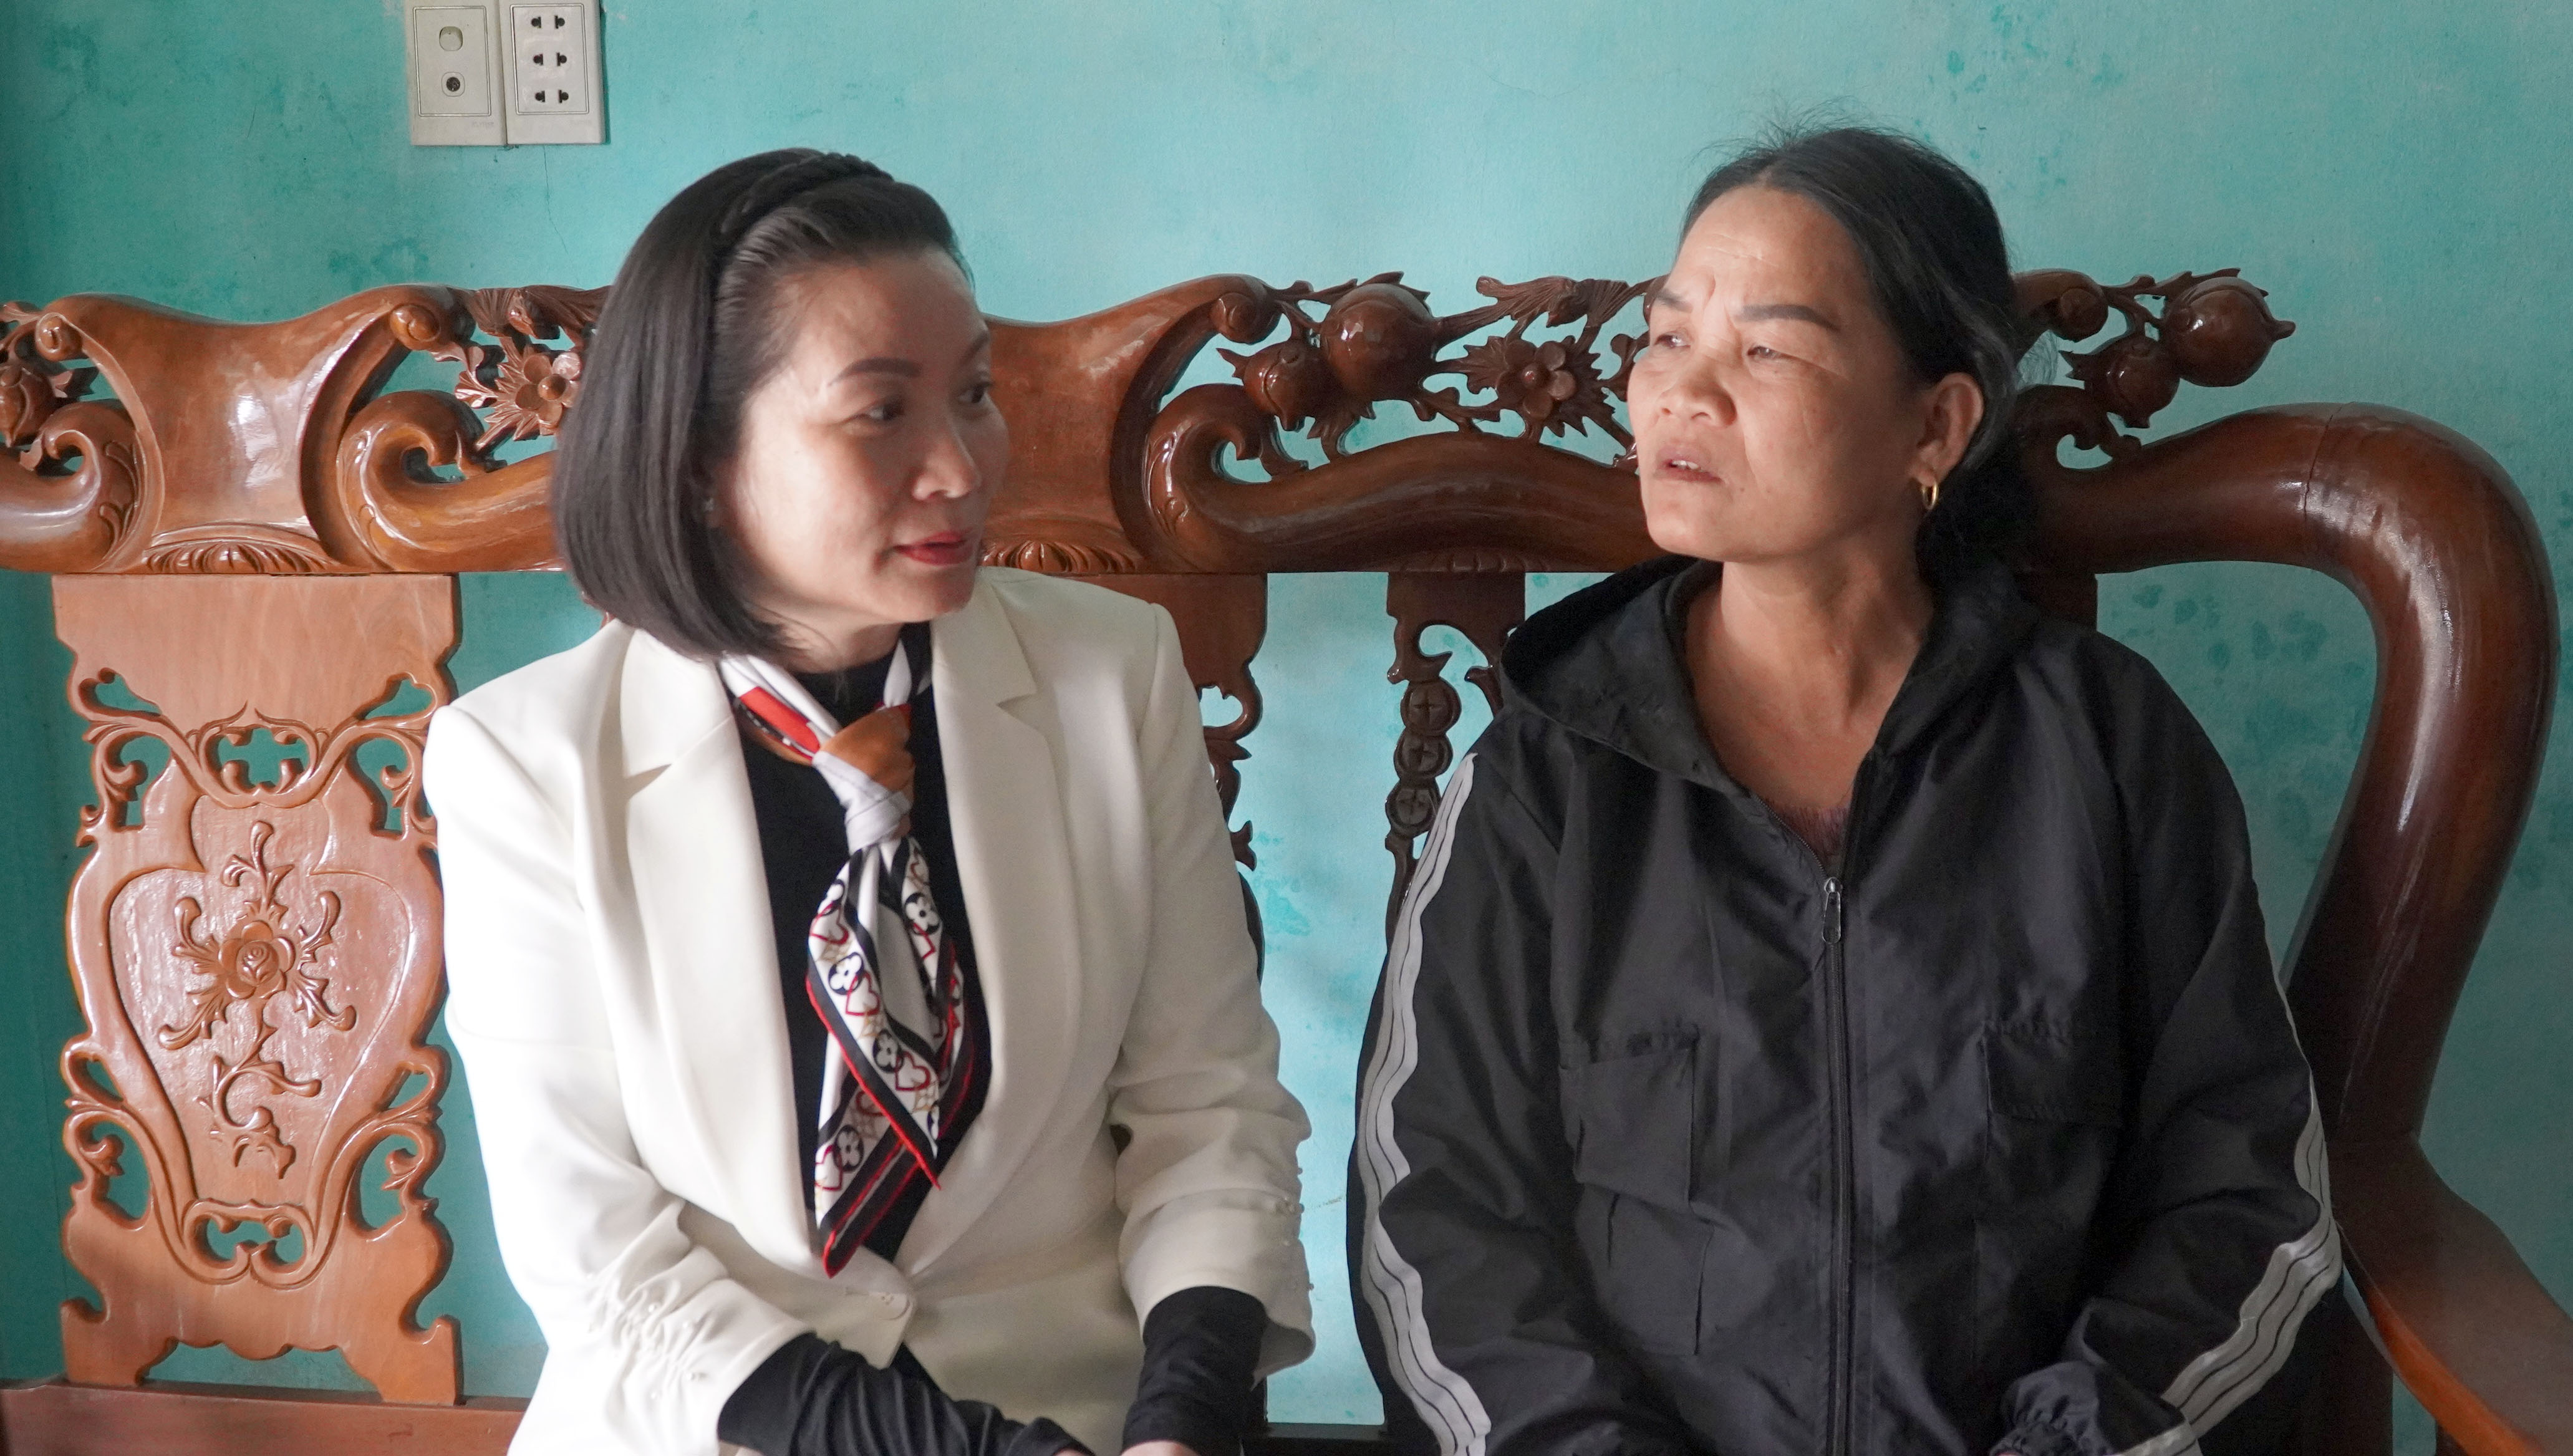 Đồng chí Phó trưởng đoàn chuyên trách Đoàn ĐBQH tỉnh Nguyễn Minh Tâm thăm gia đình liệt sỹ Phạm Văn Thái